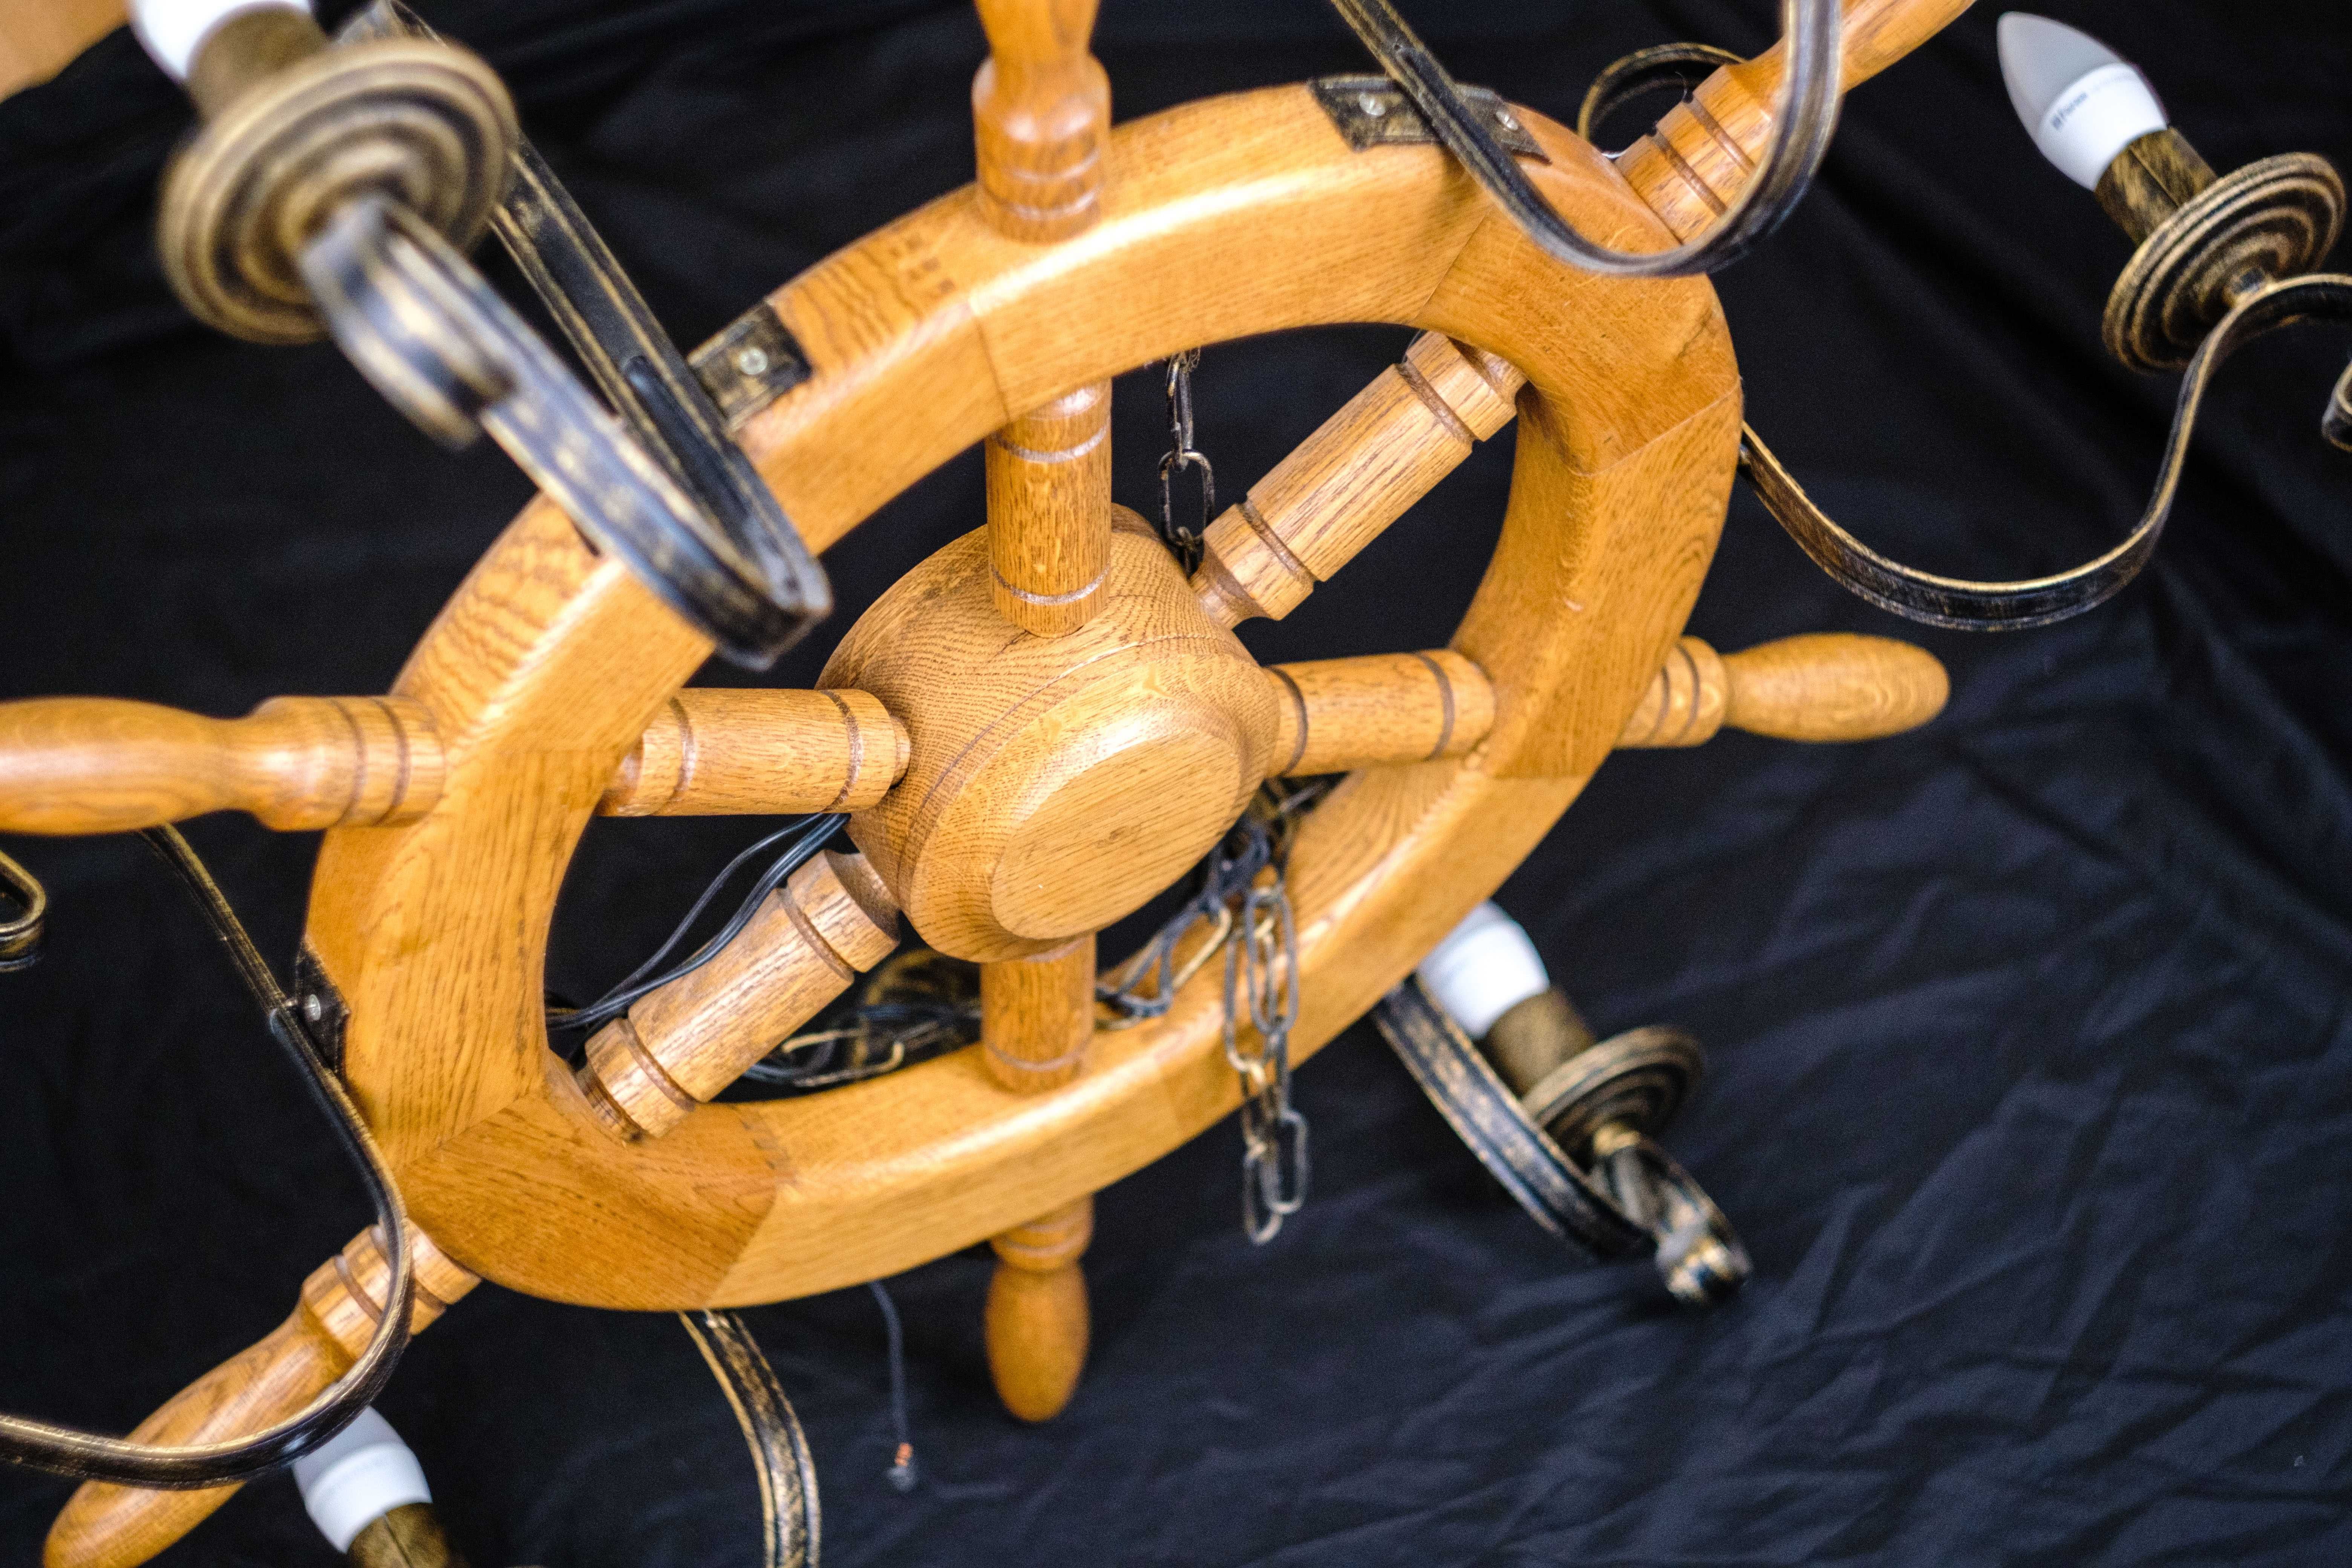 Люстра деревянная в форме корабельного штурвала с кованными элементами